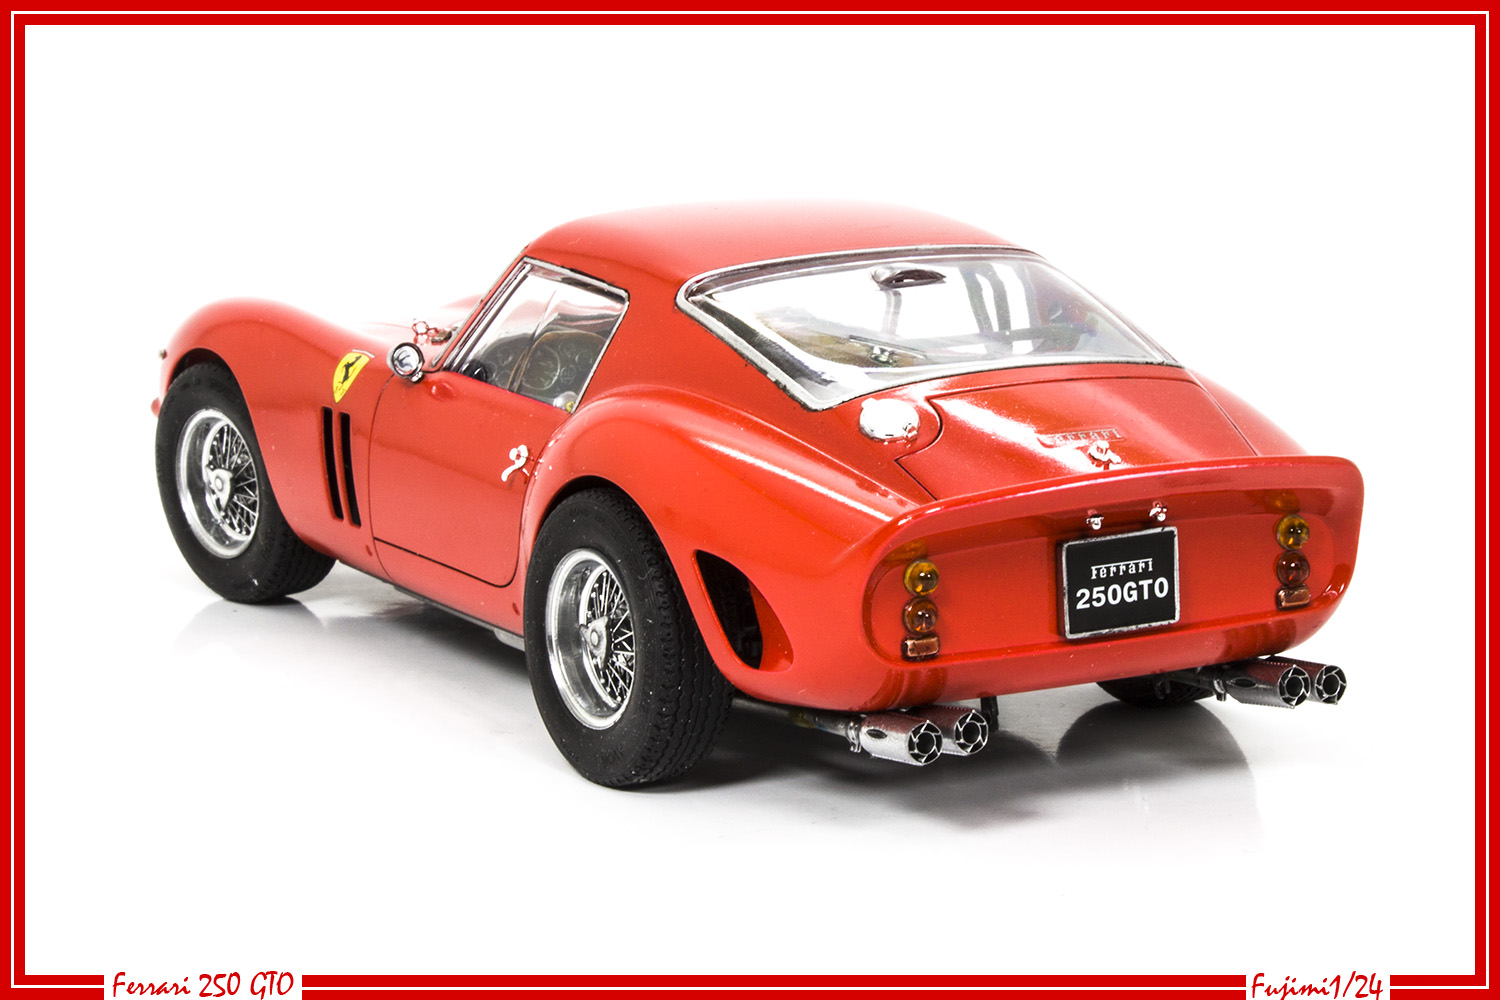 Ferrari 250 GTO - Fujimi 1/24 - Page 3 24030906564826118118369842